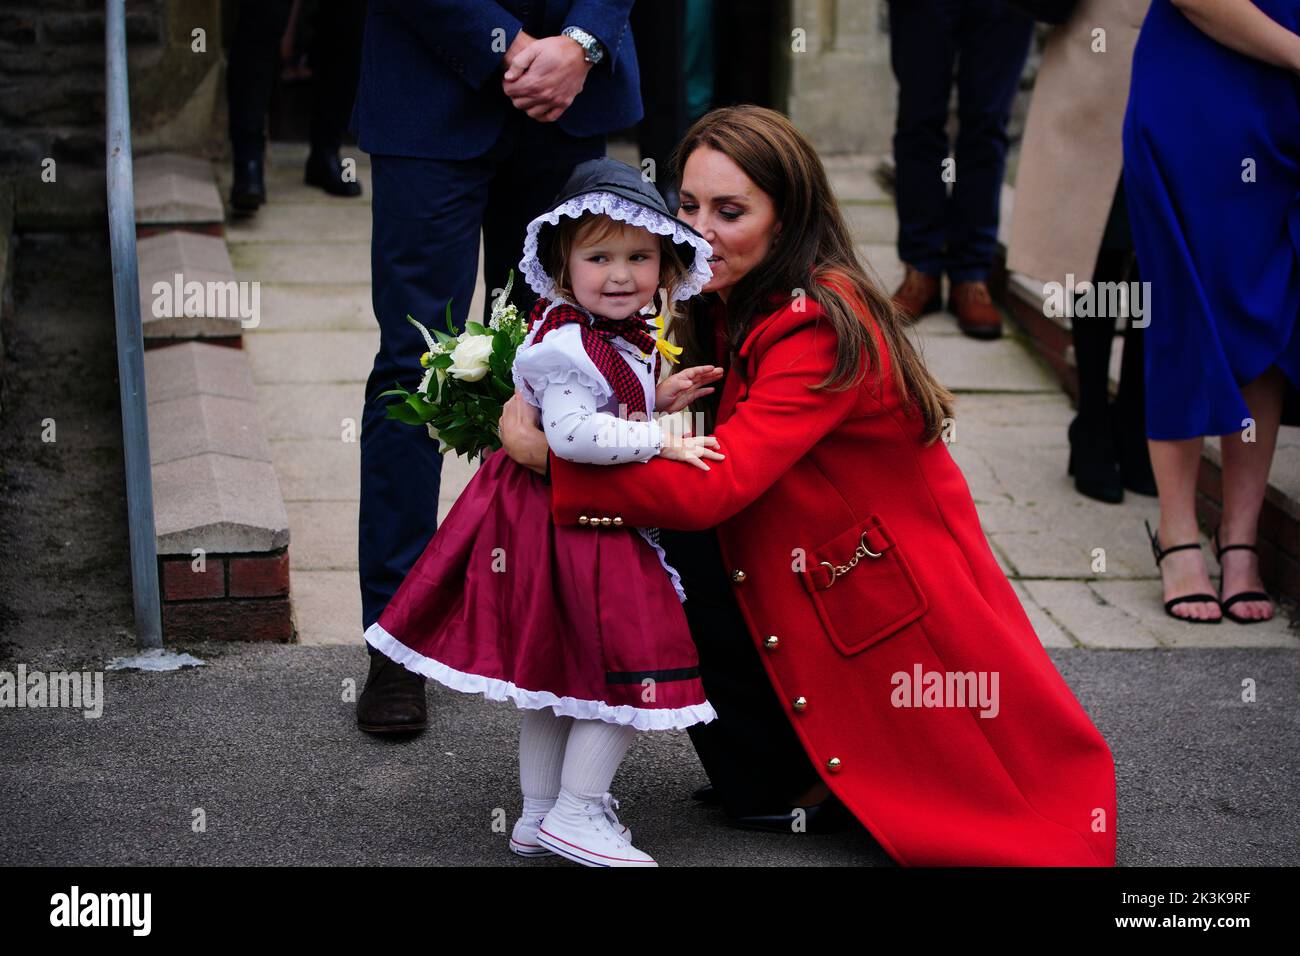 La princesse de Galles reçoit une belle fleur de Charlotte Bunting, âgée de deux ans, alors qu'elle part après une visite à l'église St Thomas, à Swansea, au pays de Galles. Date de la photo: Mardi 27 septembre 2022. Banque D'Images